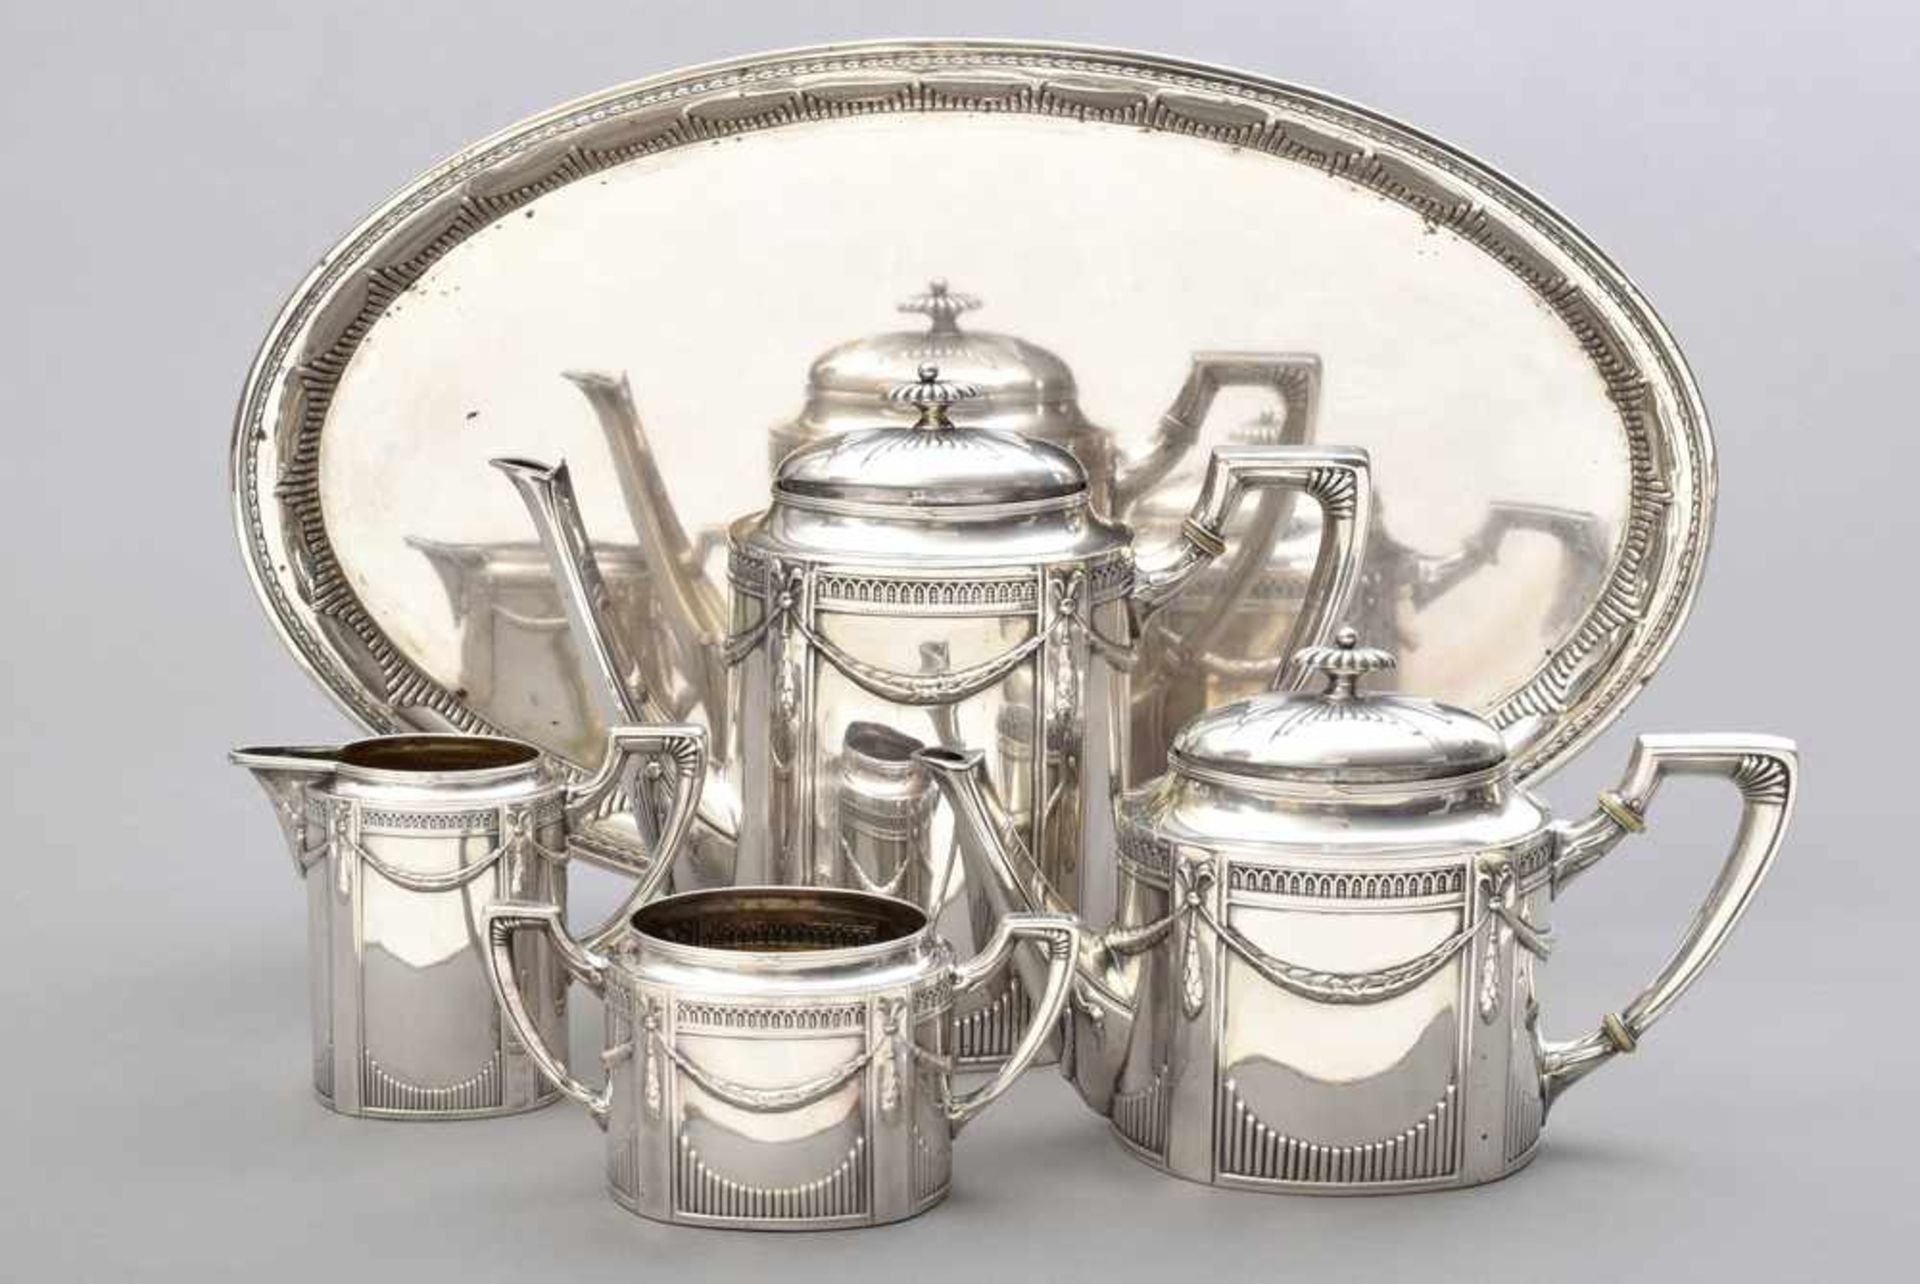 5 Teile klassizist. Kaffee-Tee-Set mit Lorbeerfestons und Strahlendekor, um 1890/1910, Wilhelm - Image 2 of 4